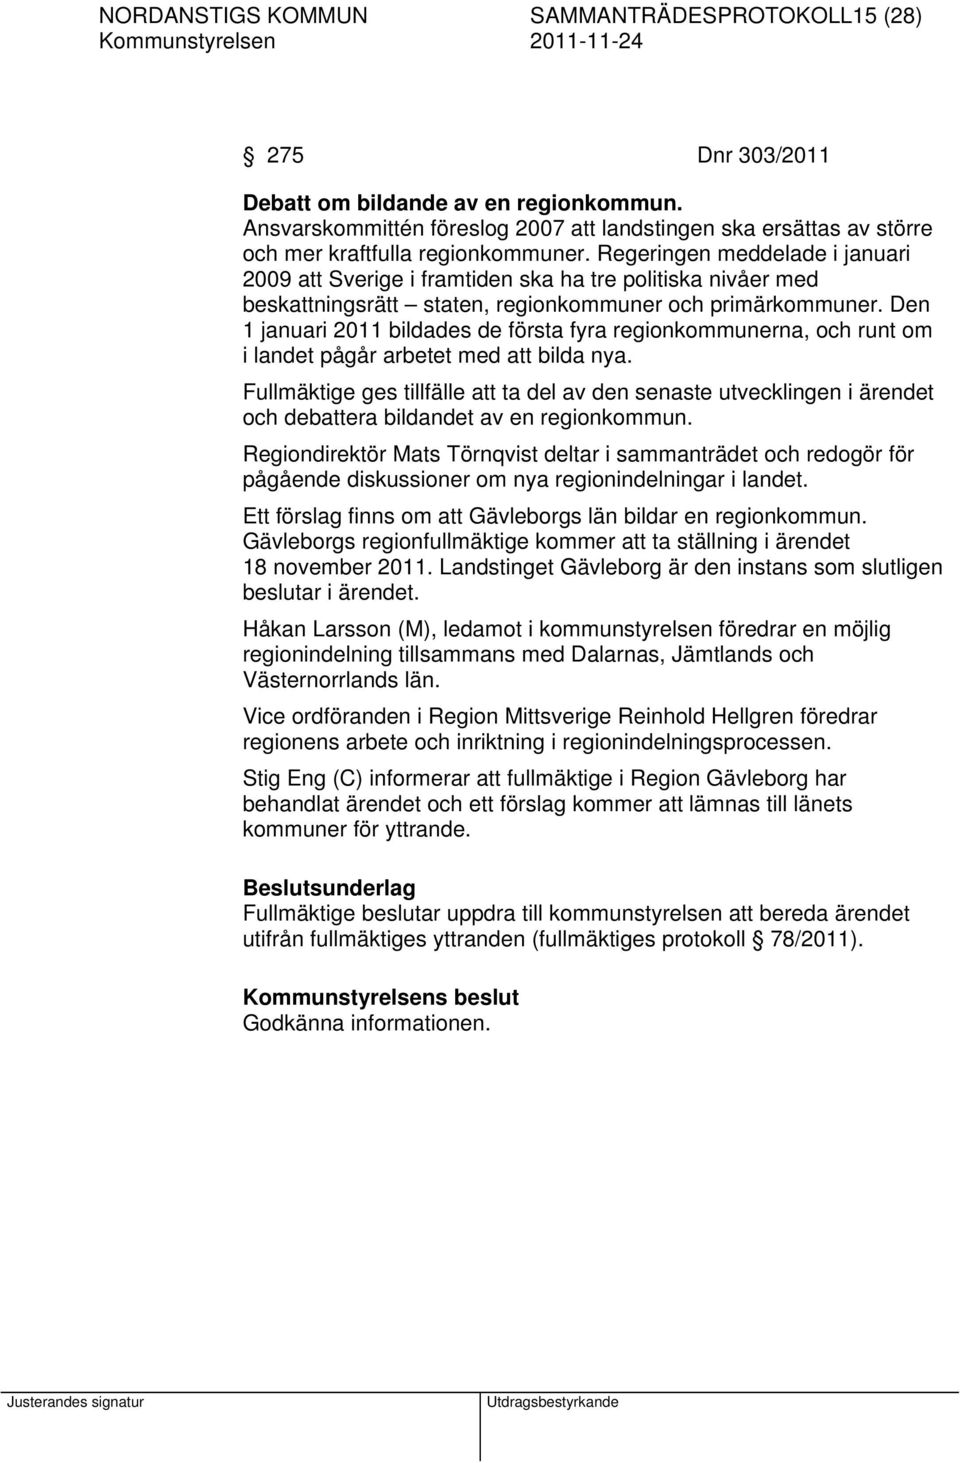 Regeringen meddelade i januari 2009 att Sverige i framtiden ska ha tre politiska nivåer med beskattningsrätt staten, regionkommuner och primärkommuner.